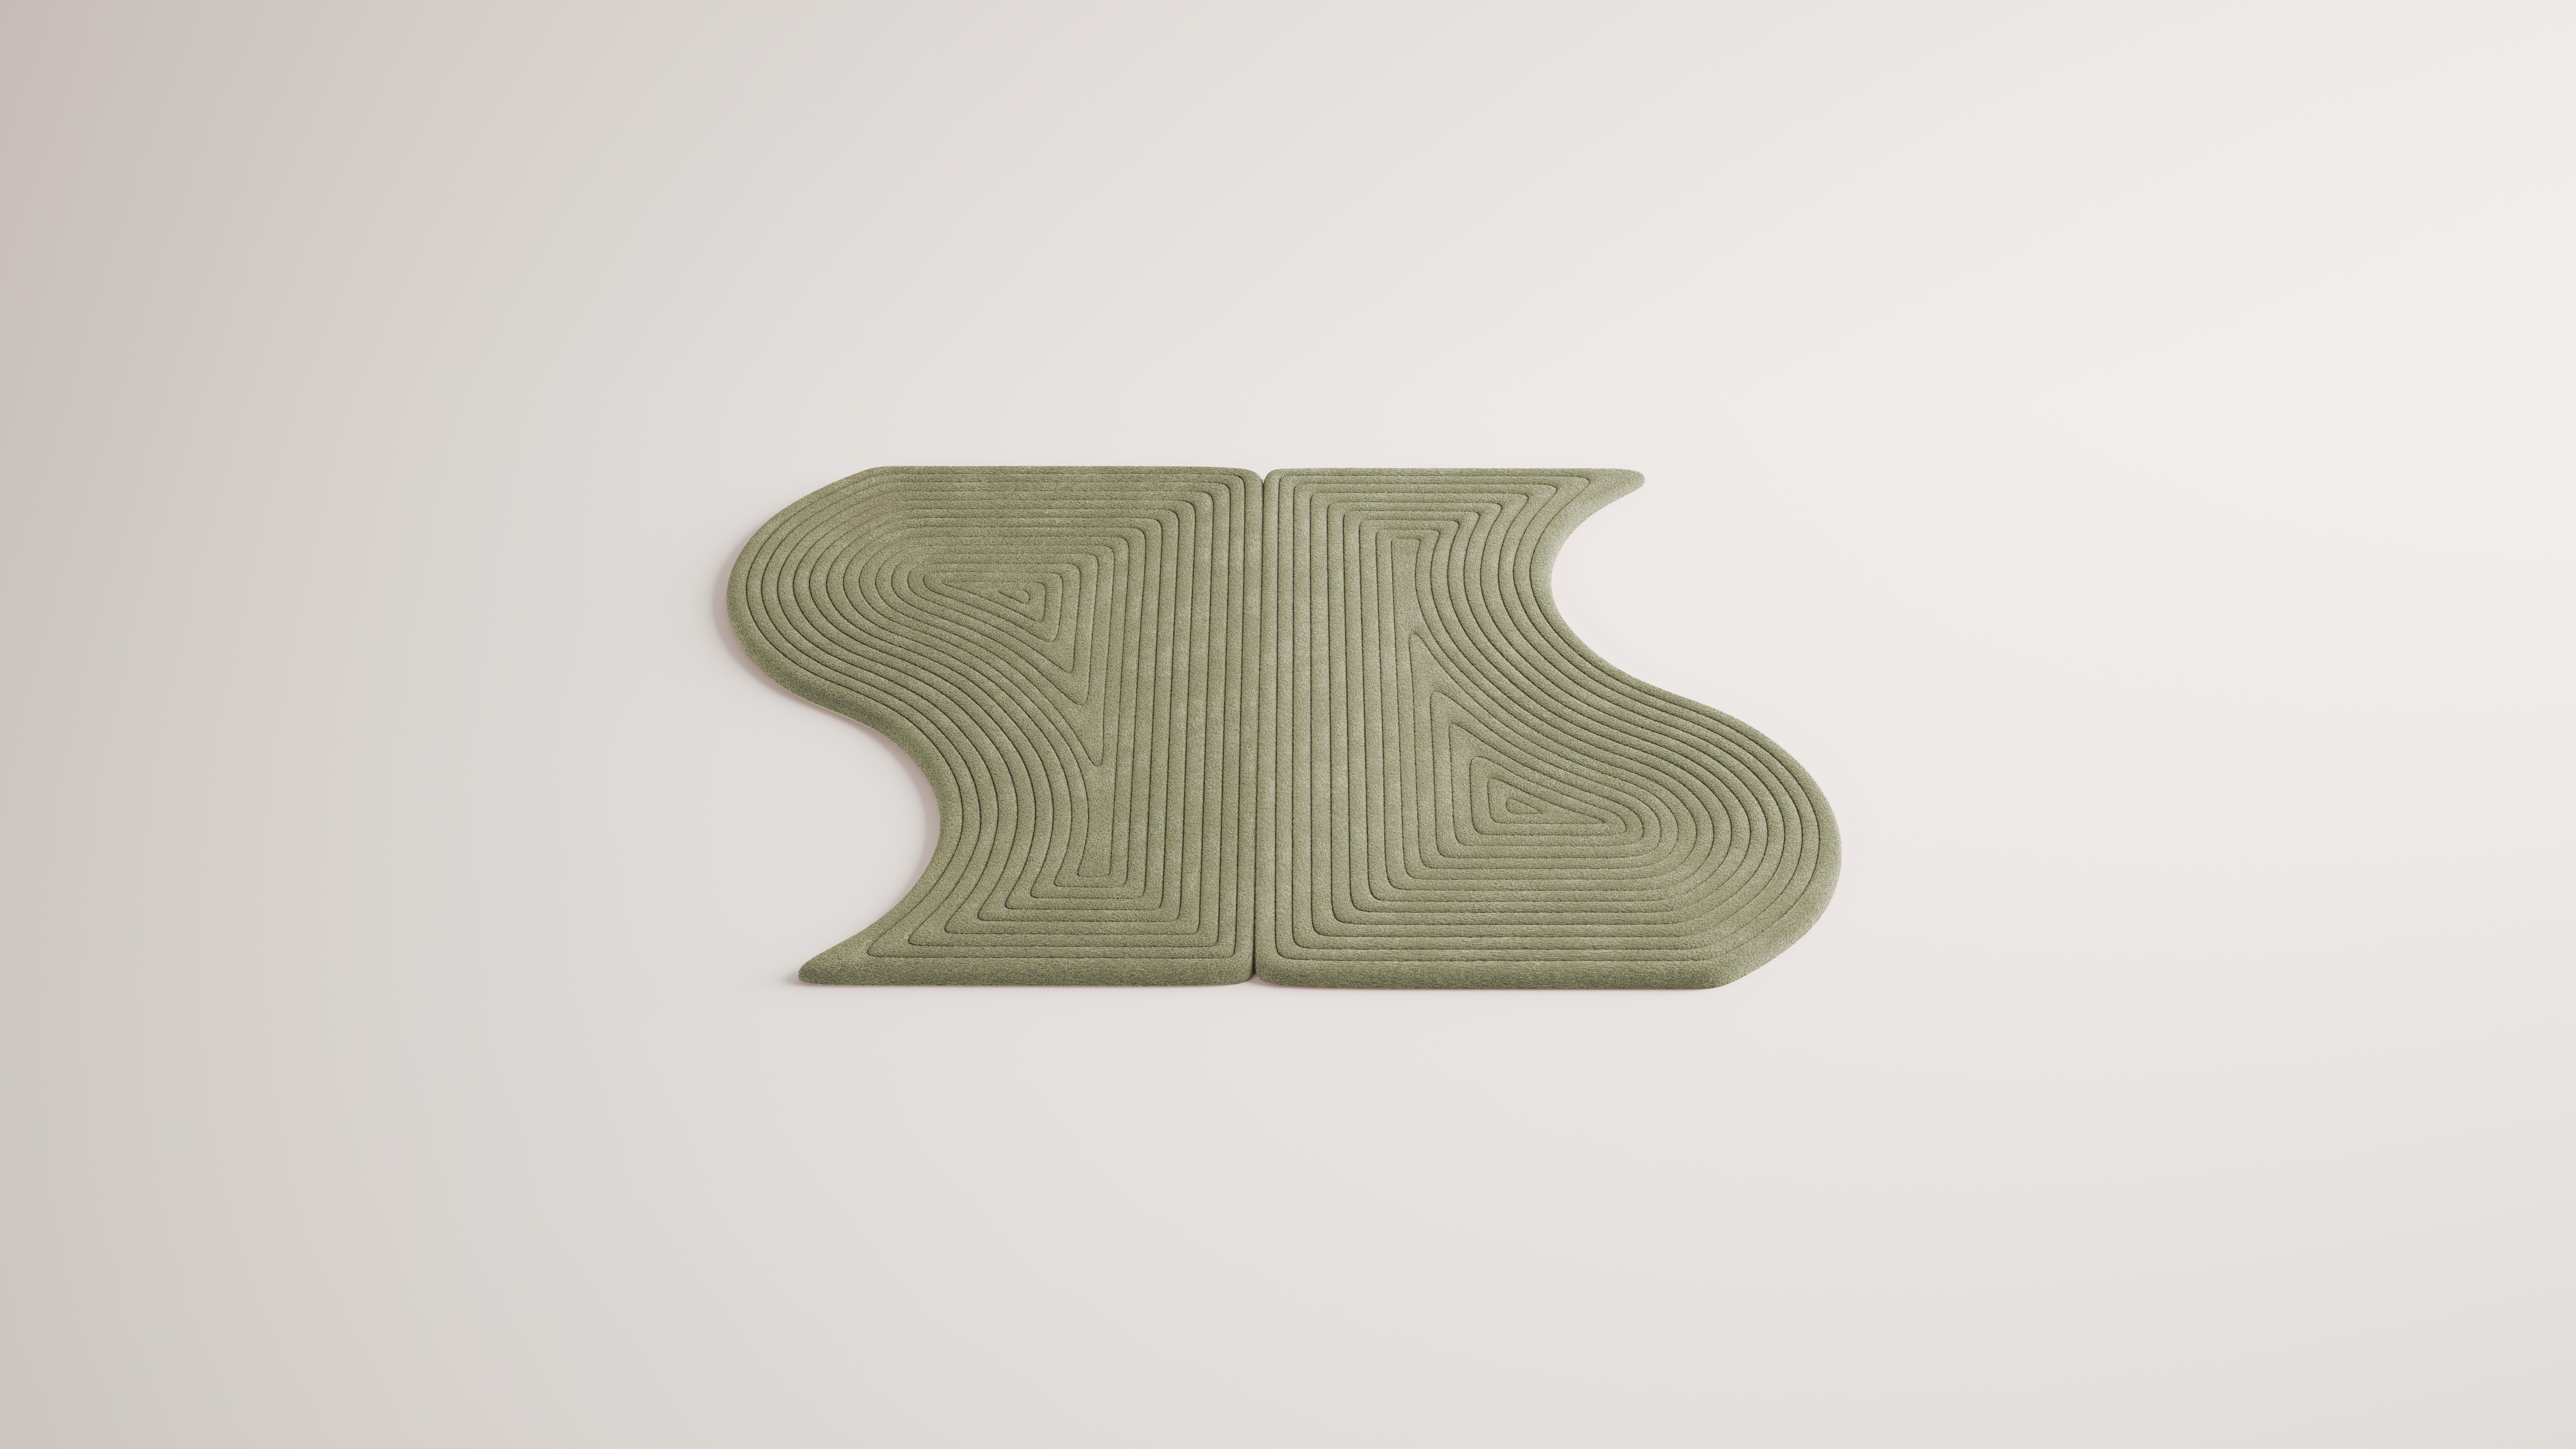 Niwa ist eine Kollektion von minimalistischen und organischen Modulteppichen. Jedes Modul kann auf endlose Weise mit anderen kombiniert werden, um anpassbare Konfigurationen zu erstellen. 

Diese Collection ist eine Darstellung des Sandelements in